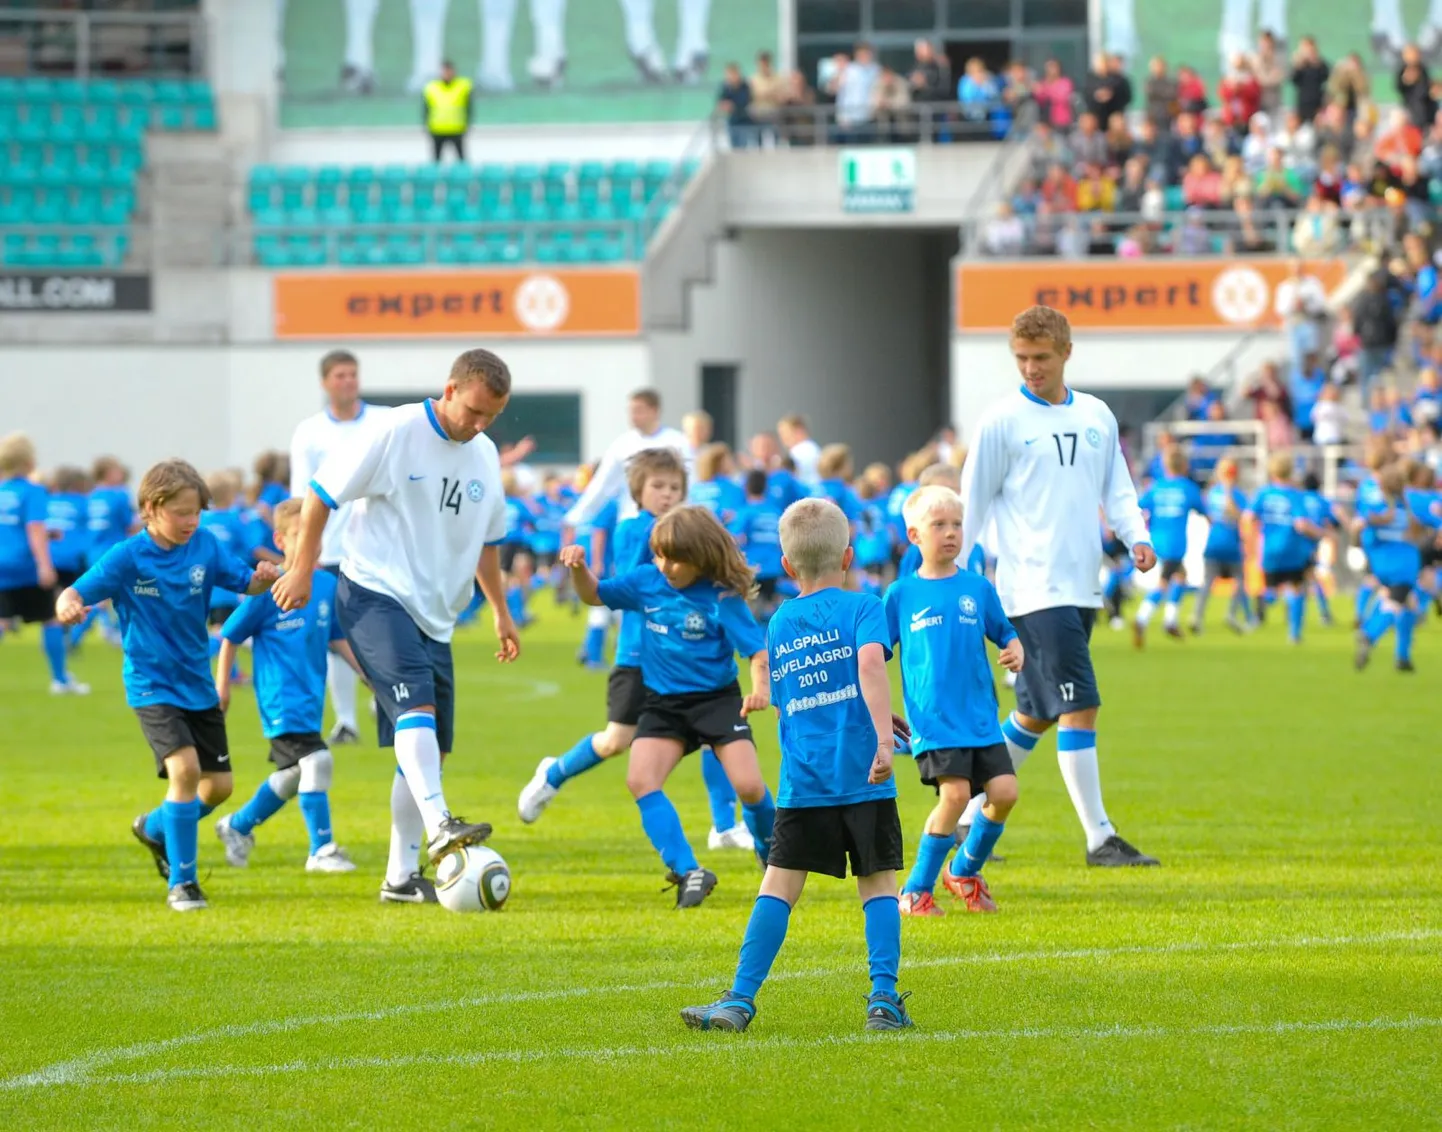 Eesti jalgpallikoondise poolkaitsja Konstantin Vassiljev (palliga) Lilleküla staadionil koos kaaslastega noortele huvilistele oma oskusi näitamas ning neile jalgpallipisikut süstimas.